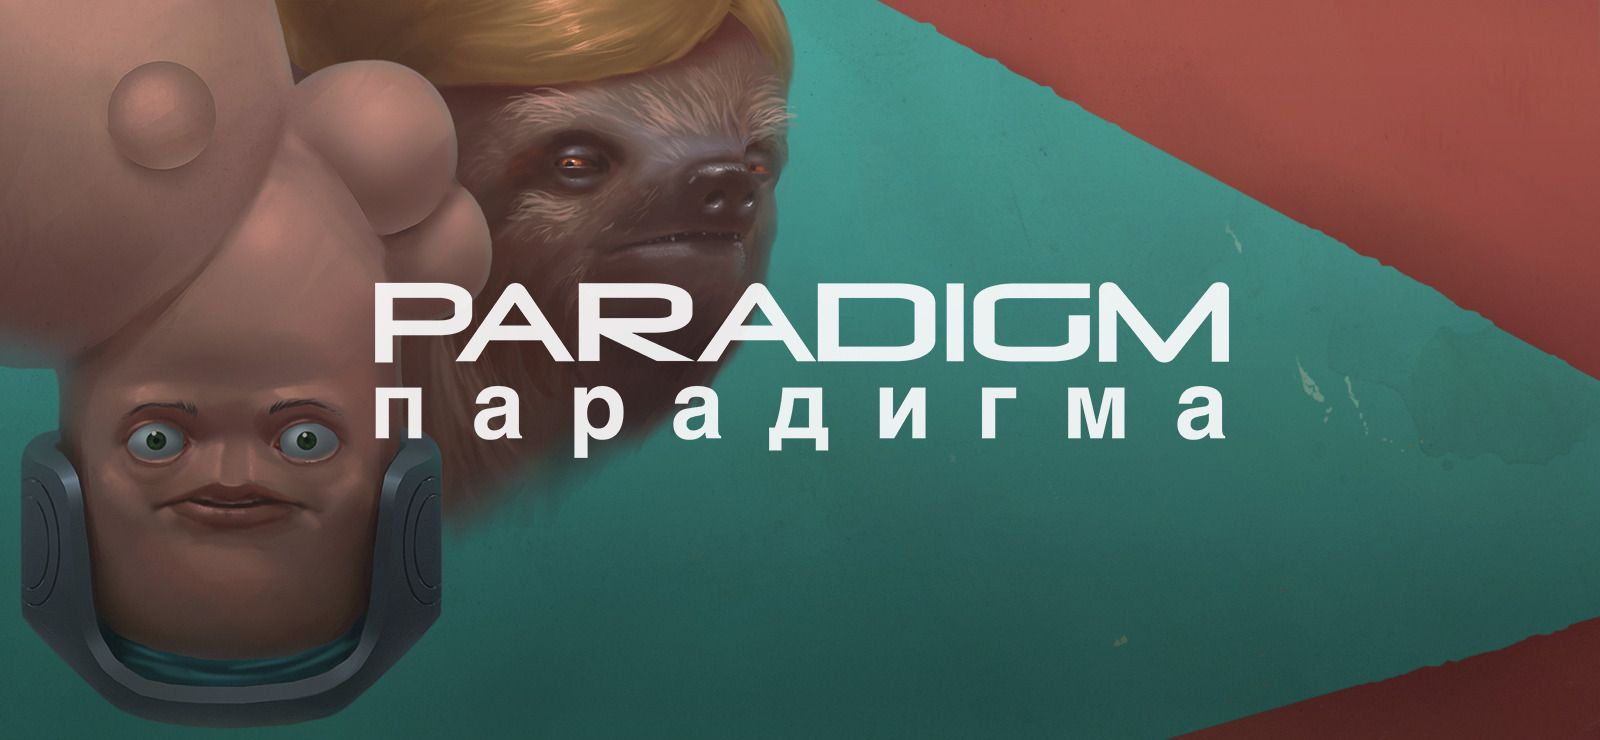 Paradigm - Free Epic Games Game